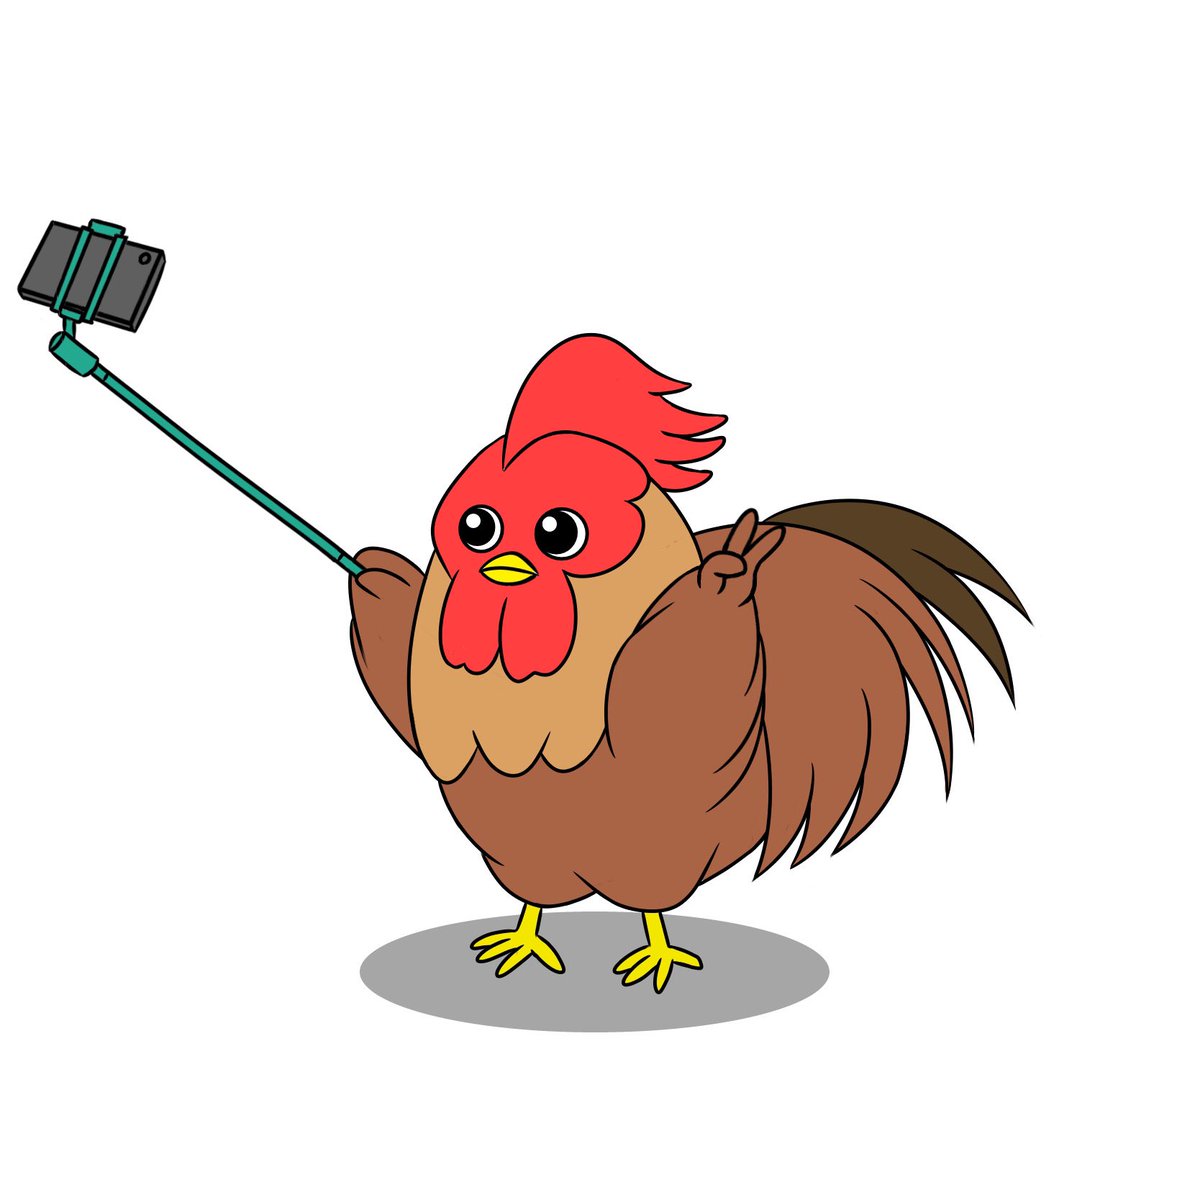 Twoucan 地鶏の自撮り の注目ツイート イラスト マンガ コスプレ モデル